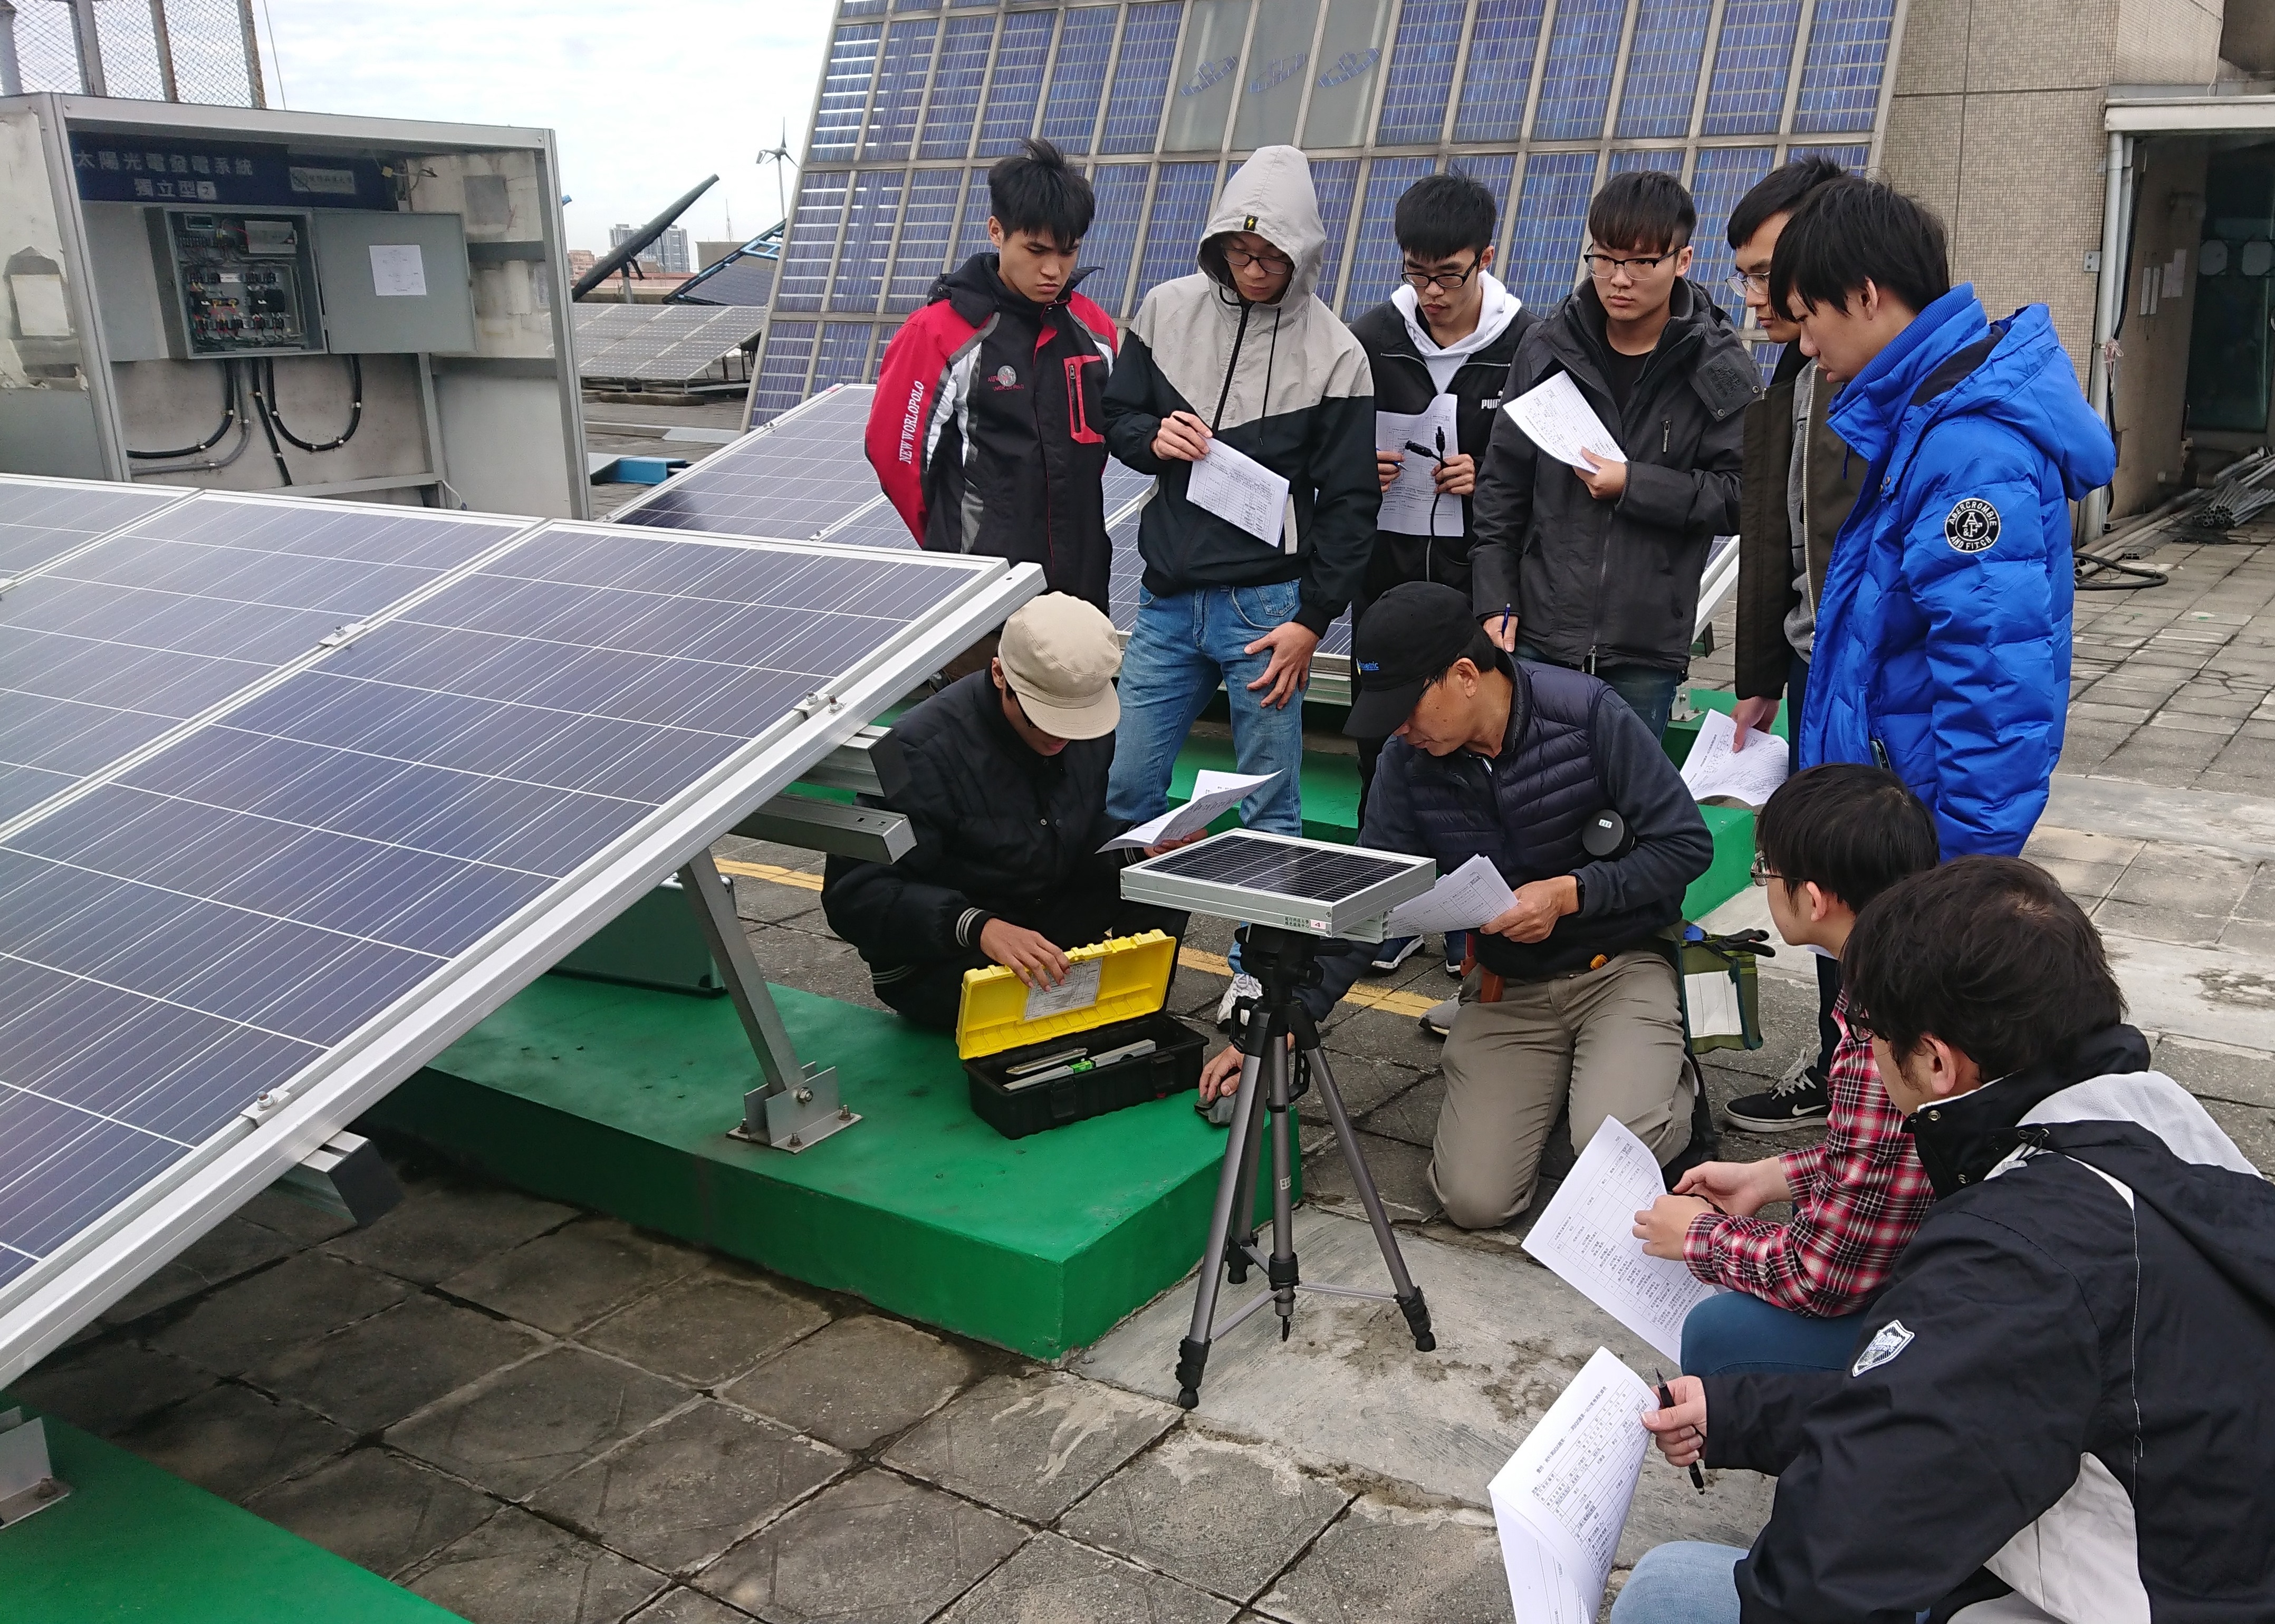 太陽光電系統設置班學生上課照片。